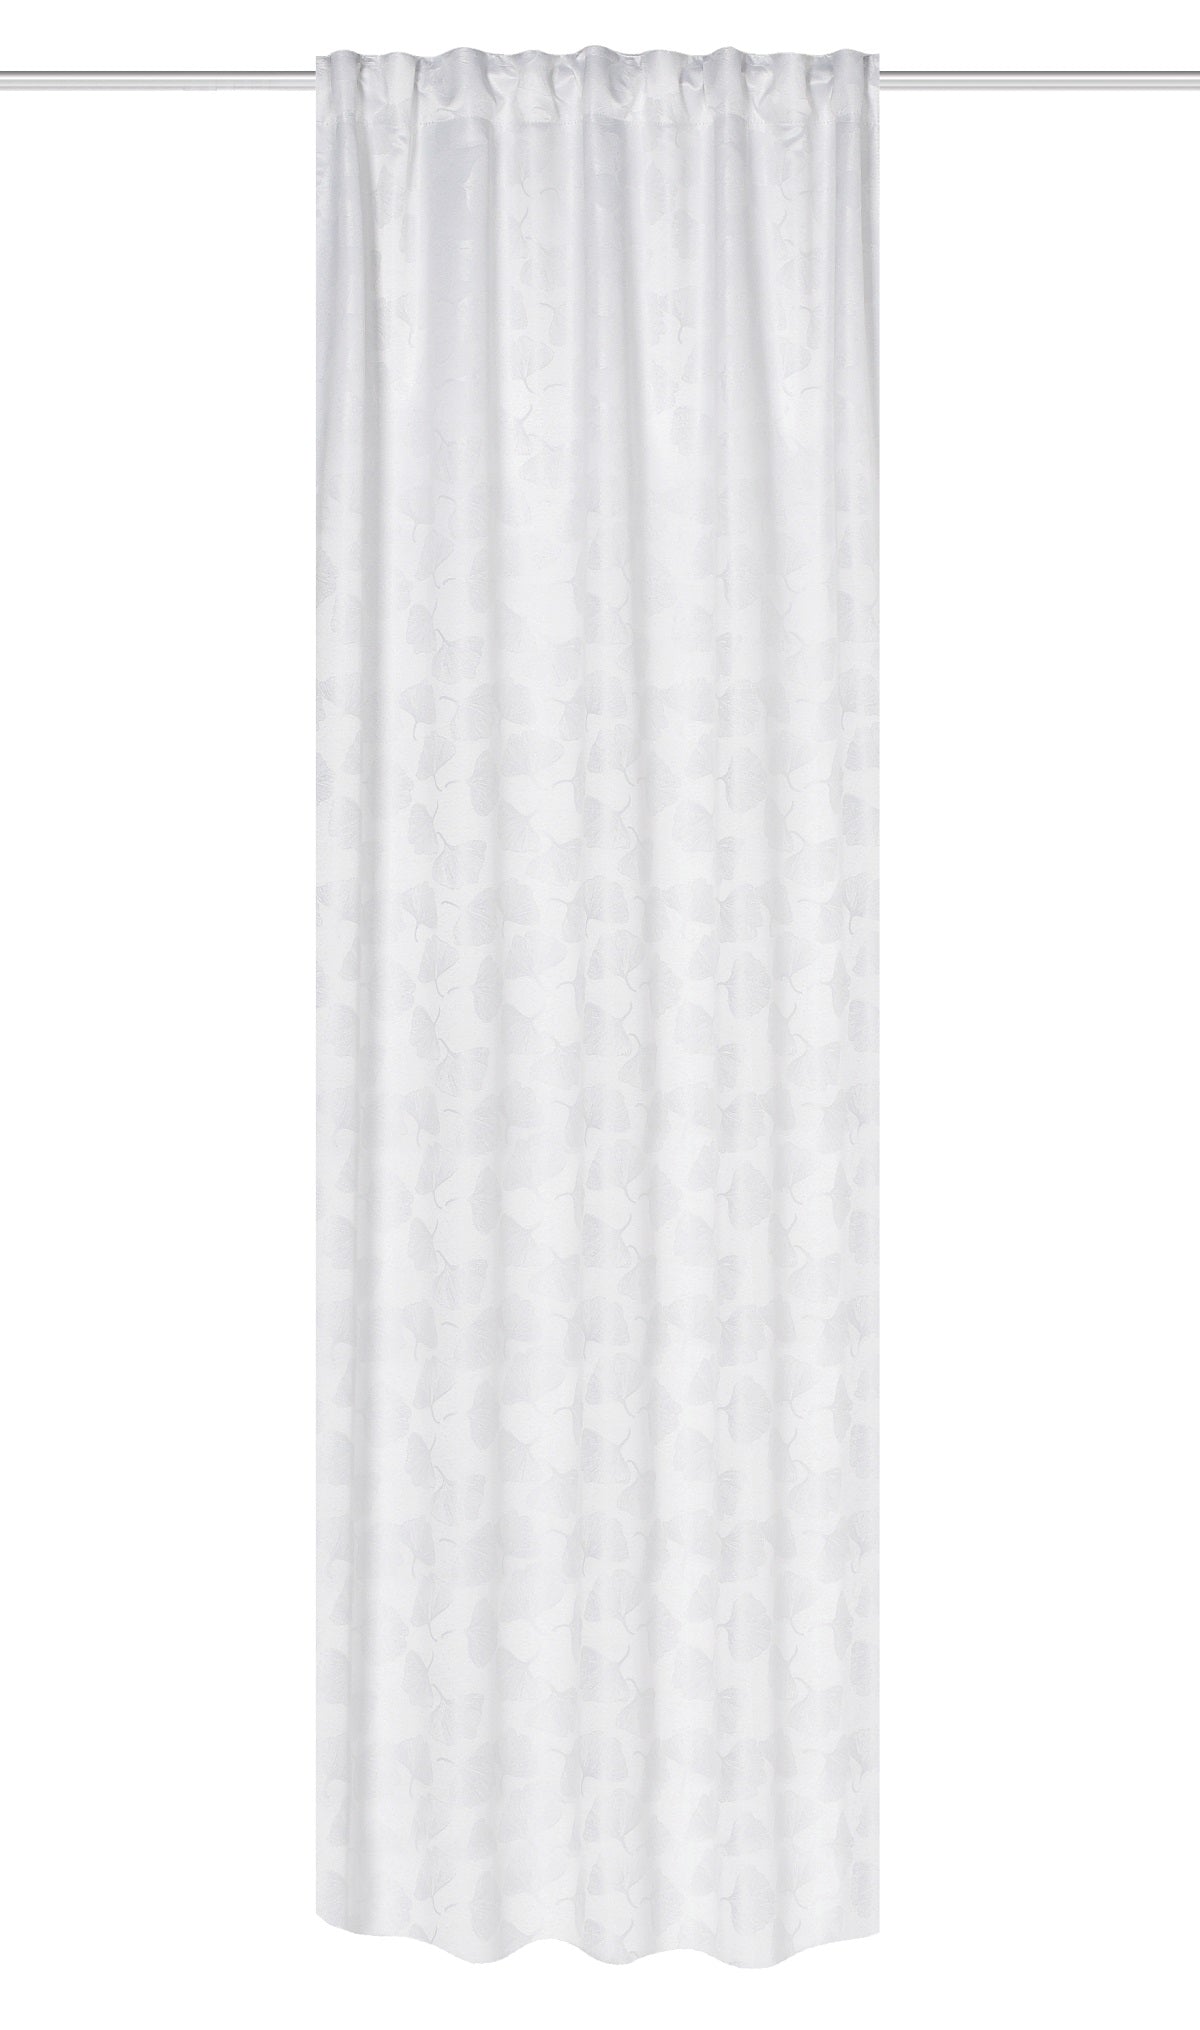 Rideau de nuit blanc laine Fiona